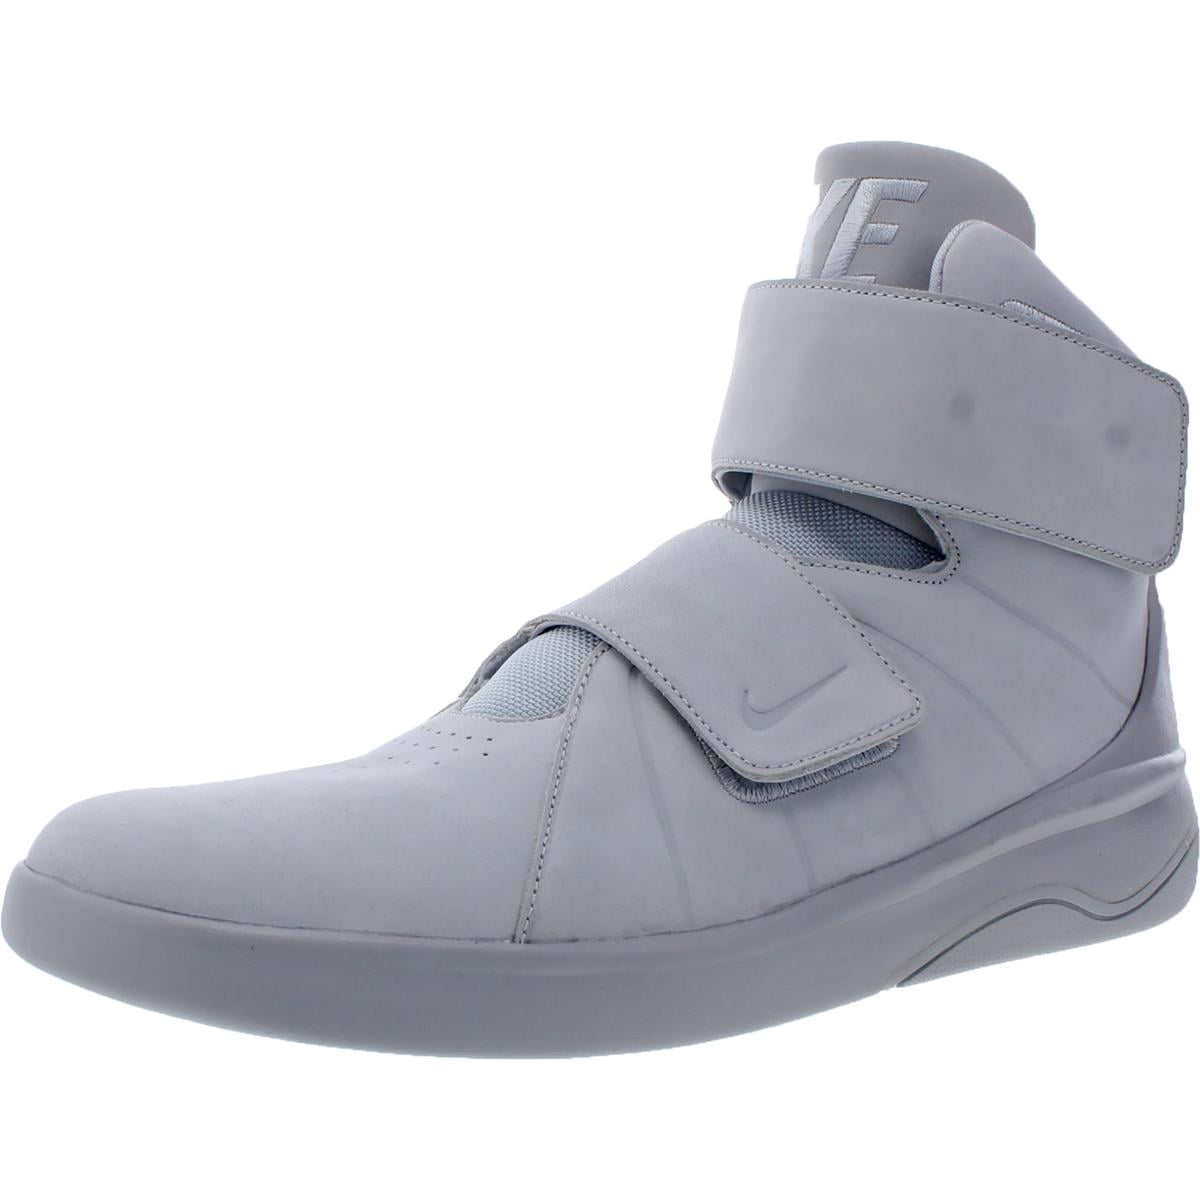 Aan het liegen Verstrooien boycot Nike Mens Marxman PRM Leather High-Top Sneakers - Walmart.com